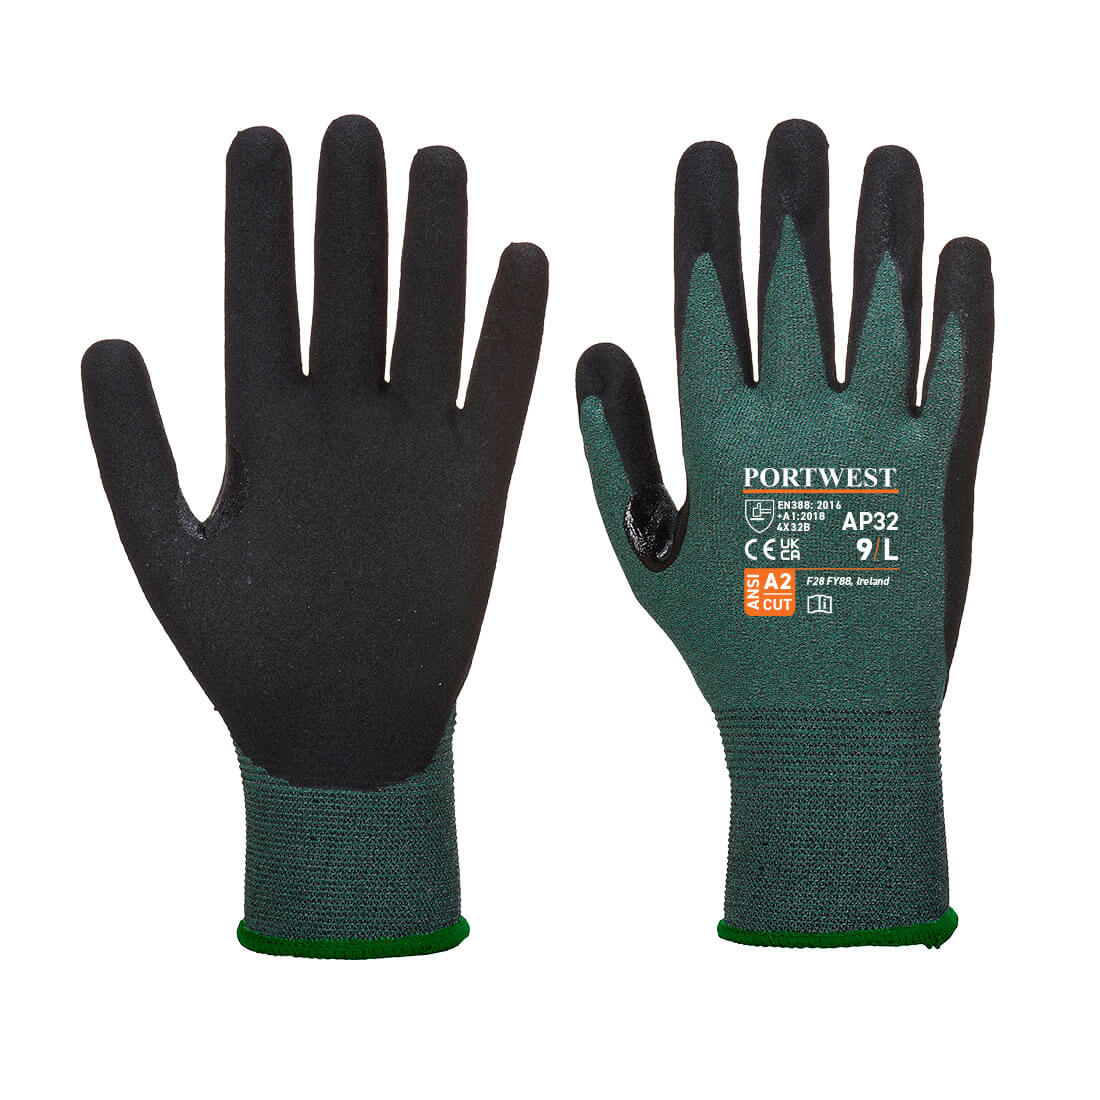 Dexti Cut Pro Glove - Black/Grey